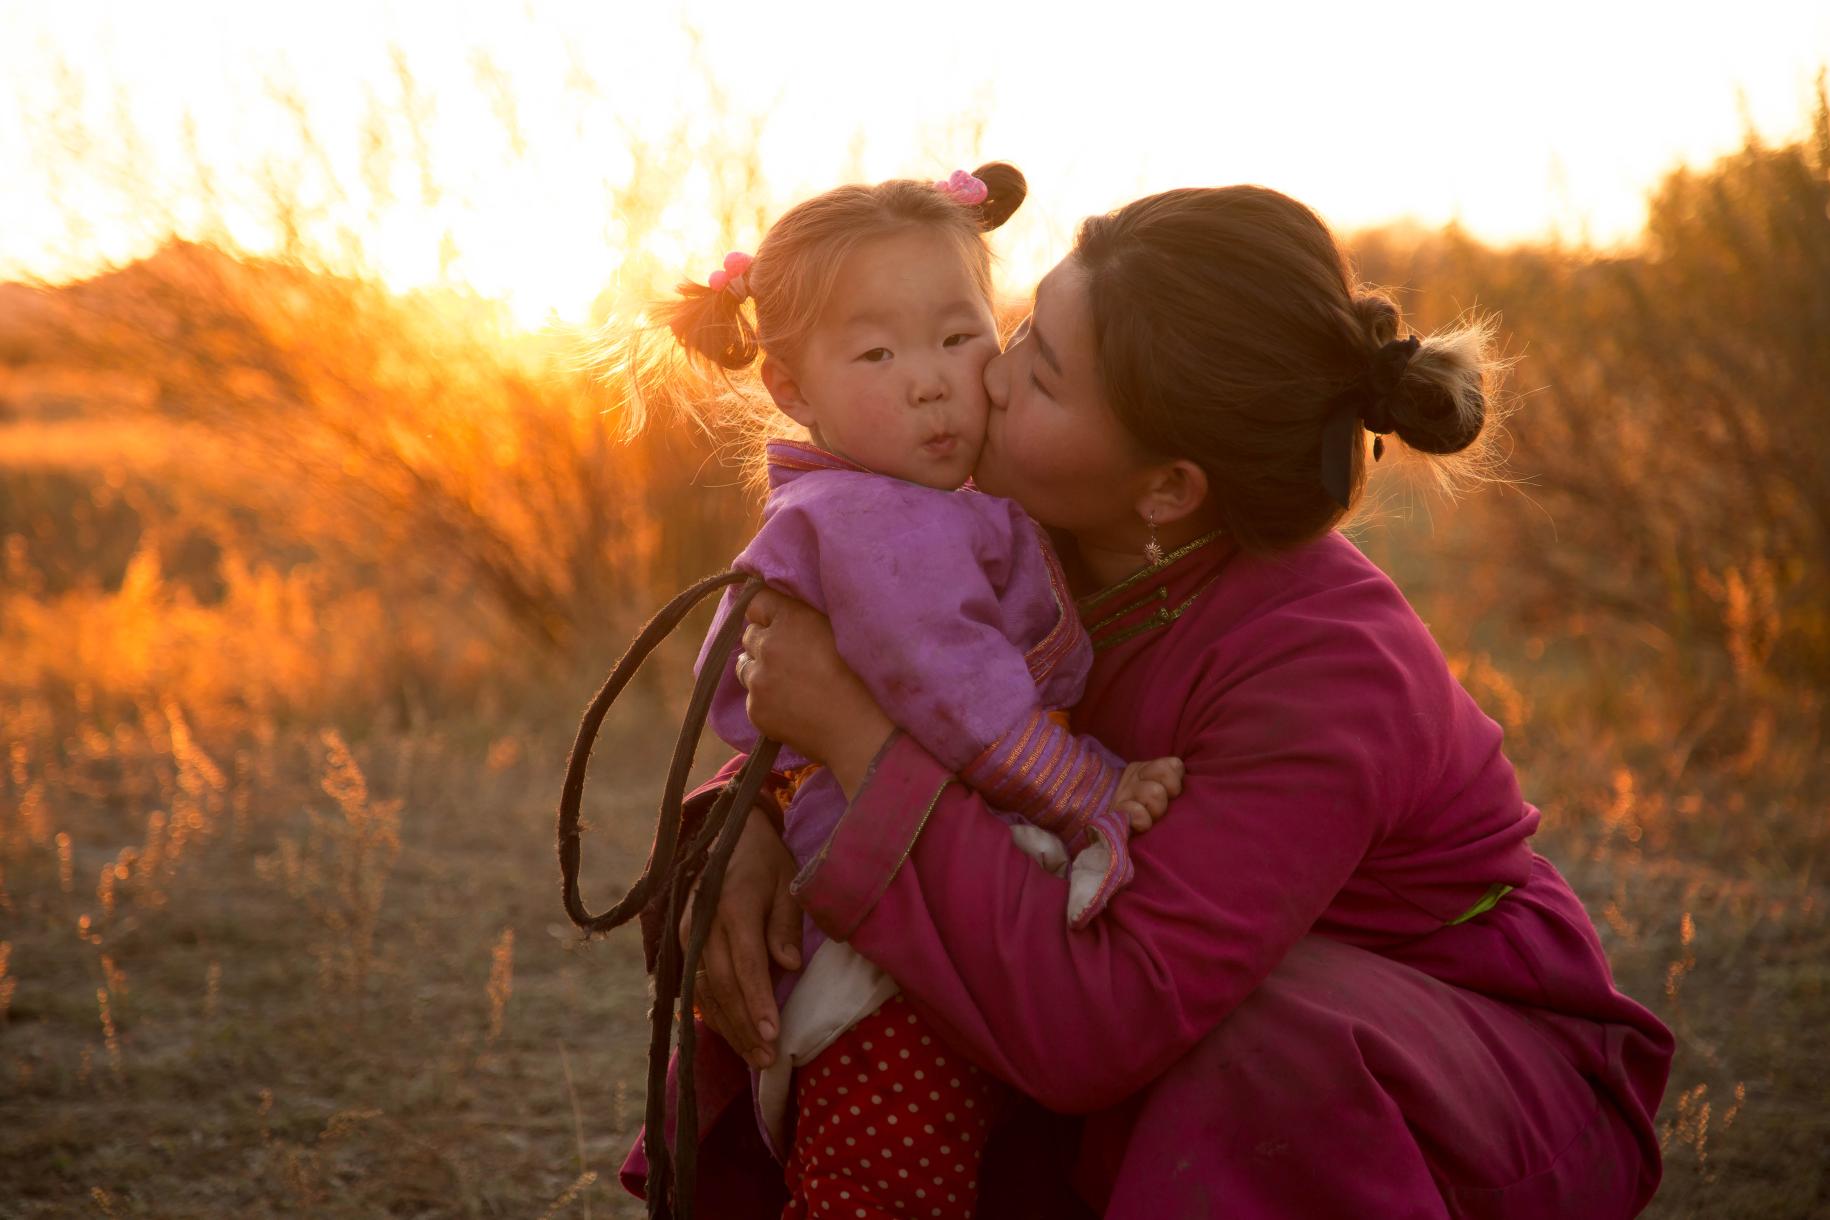 Une femme s'accroupit pour embrasser une petite fille sur la joue dans un champ, au moment du coucher du soleil.